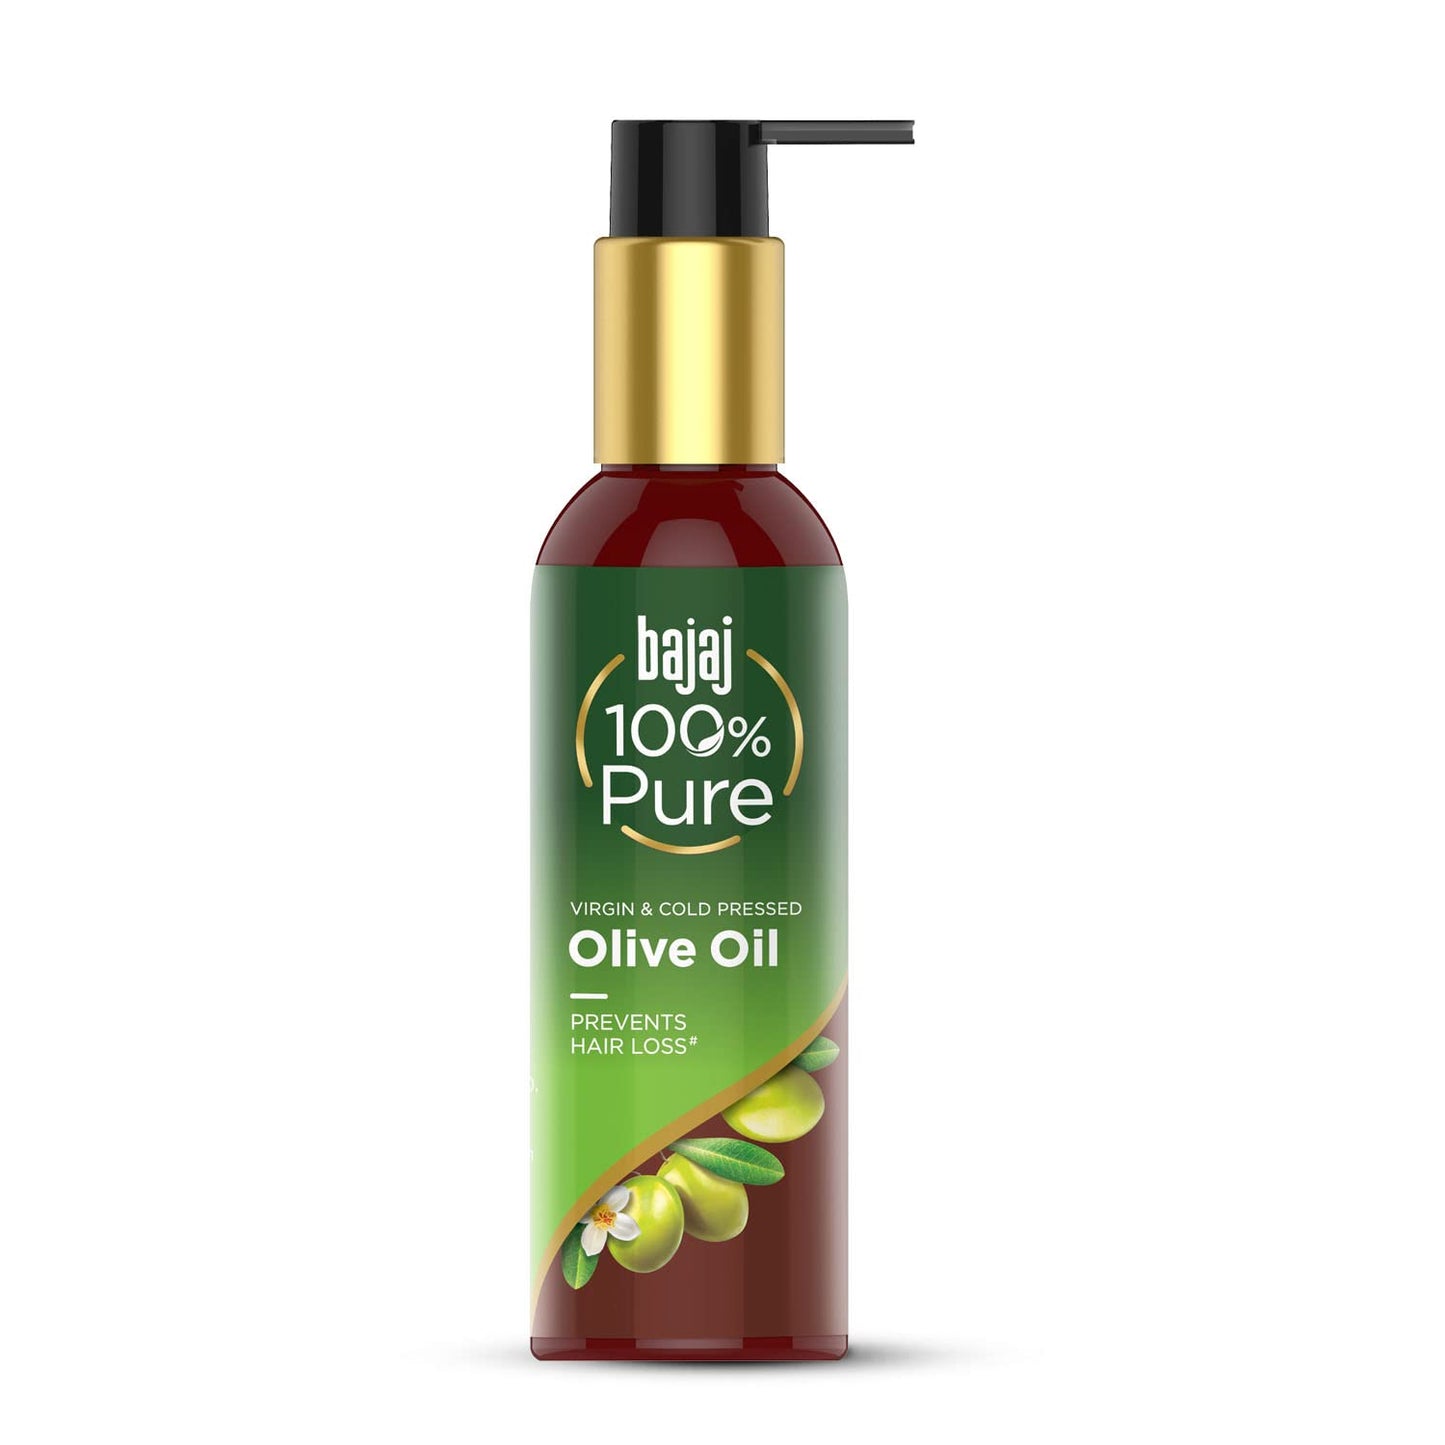 Bajaj 100% Pure Virgin & Cold Pressed Olive Oil 200ml